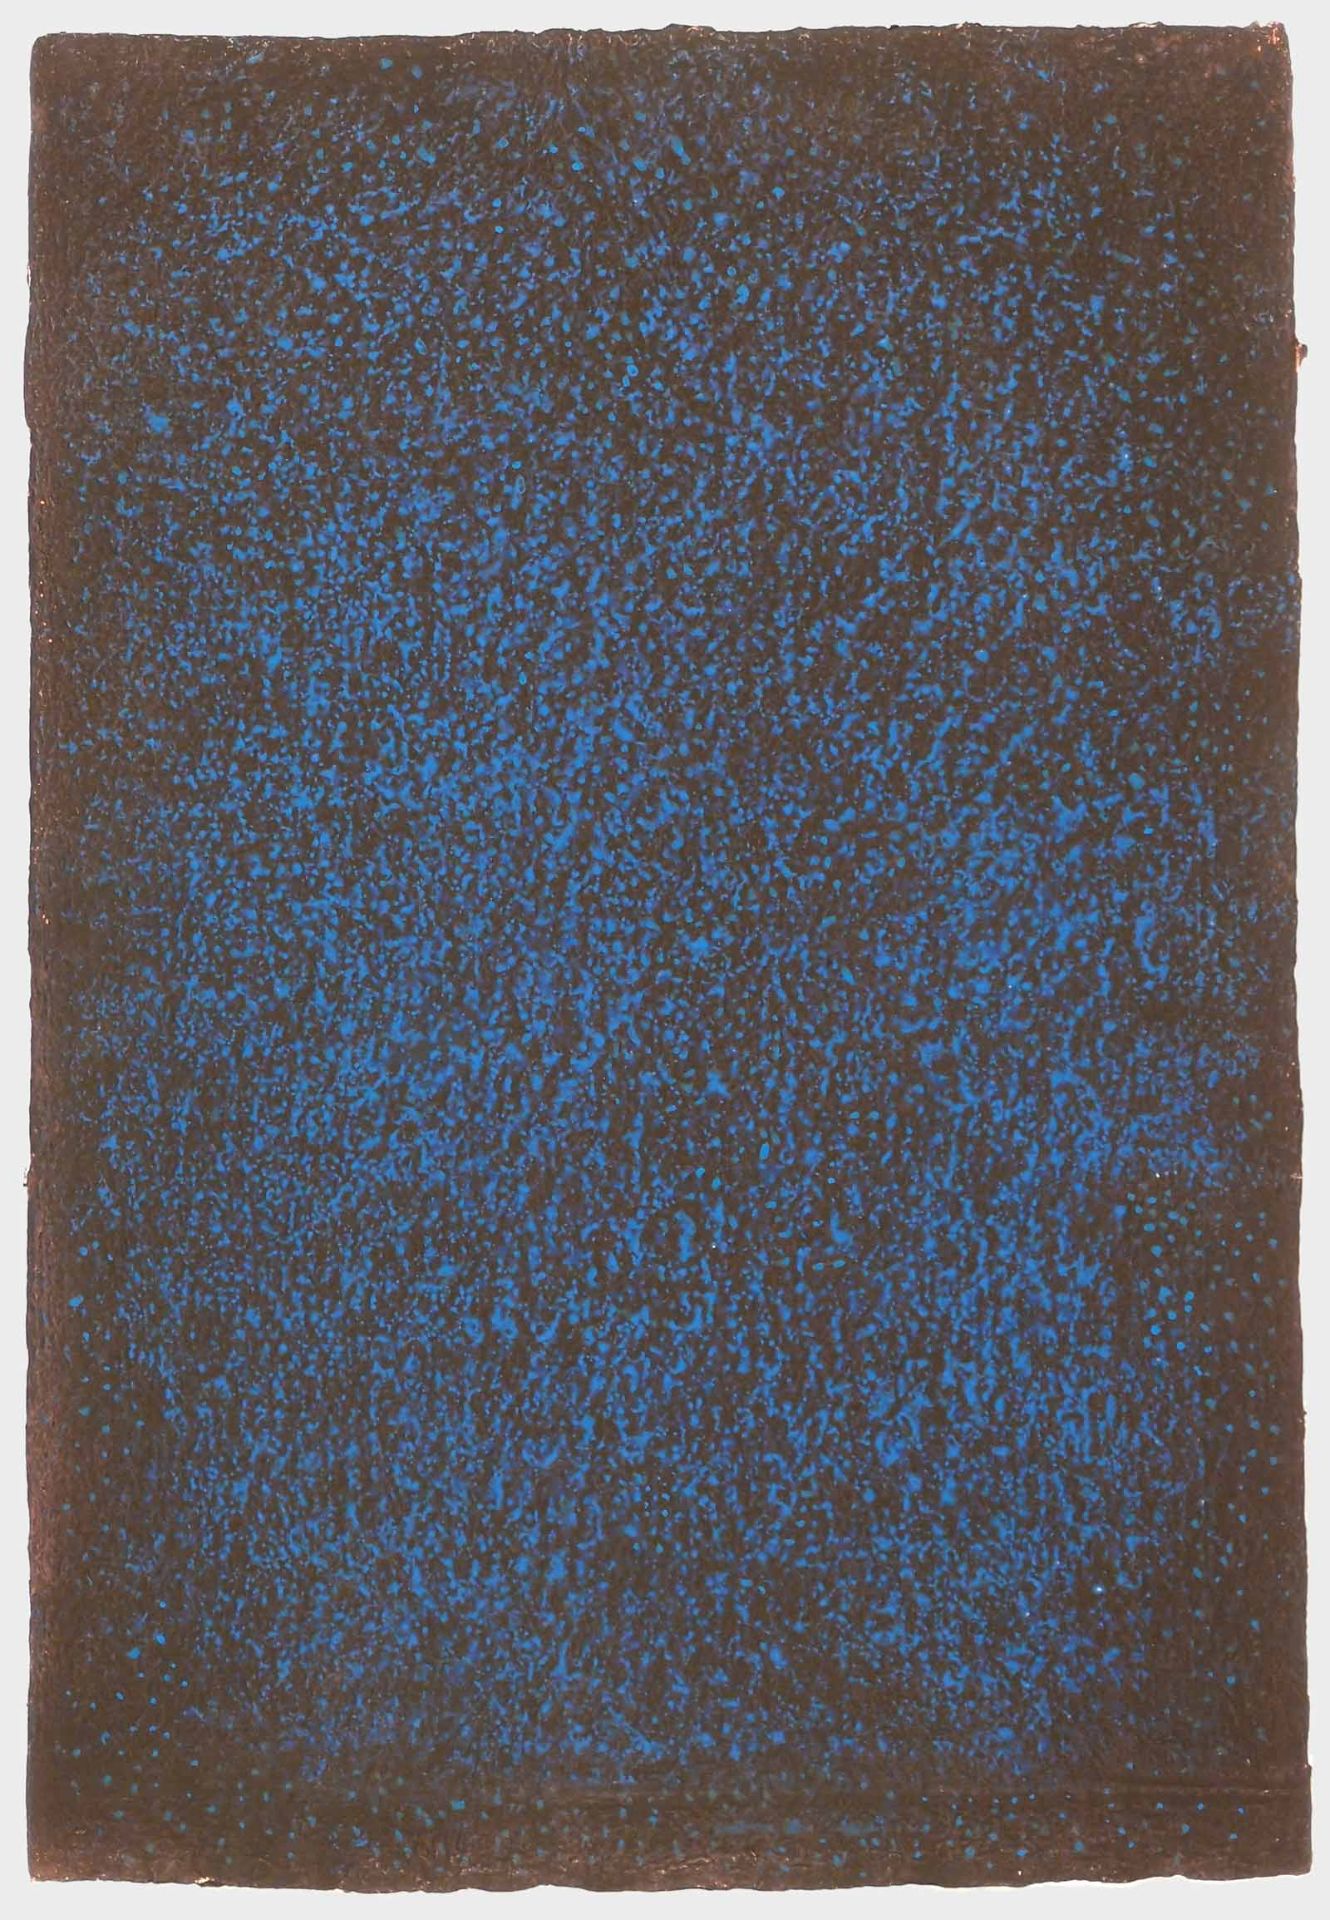 Kuno GonschiorWanne-Eickel 1935 - 2010 BochumOhne Titel. Gouache auf Karton. 1986. 80 x 56 cm.